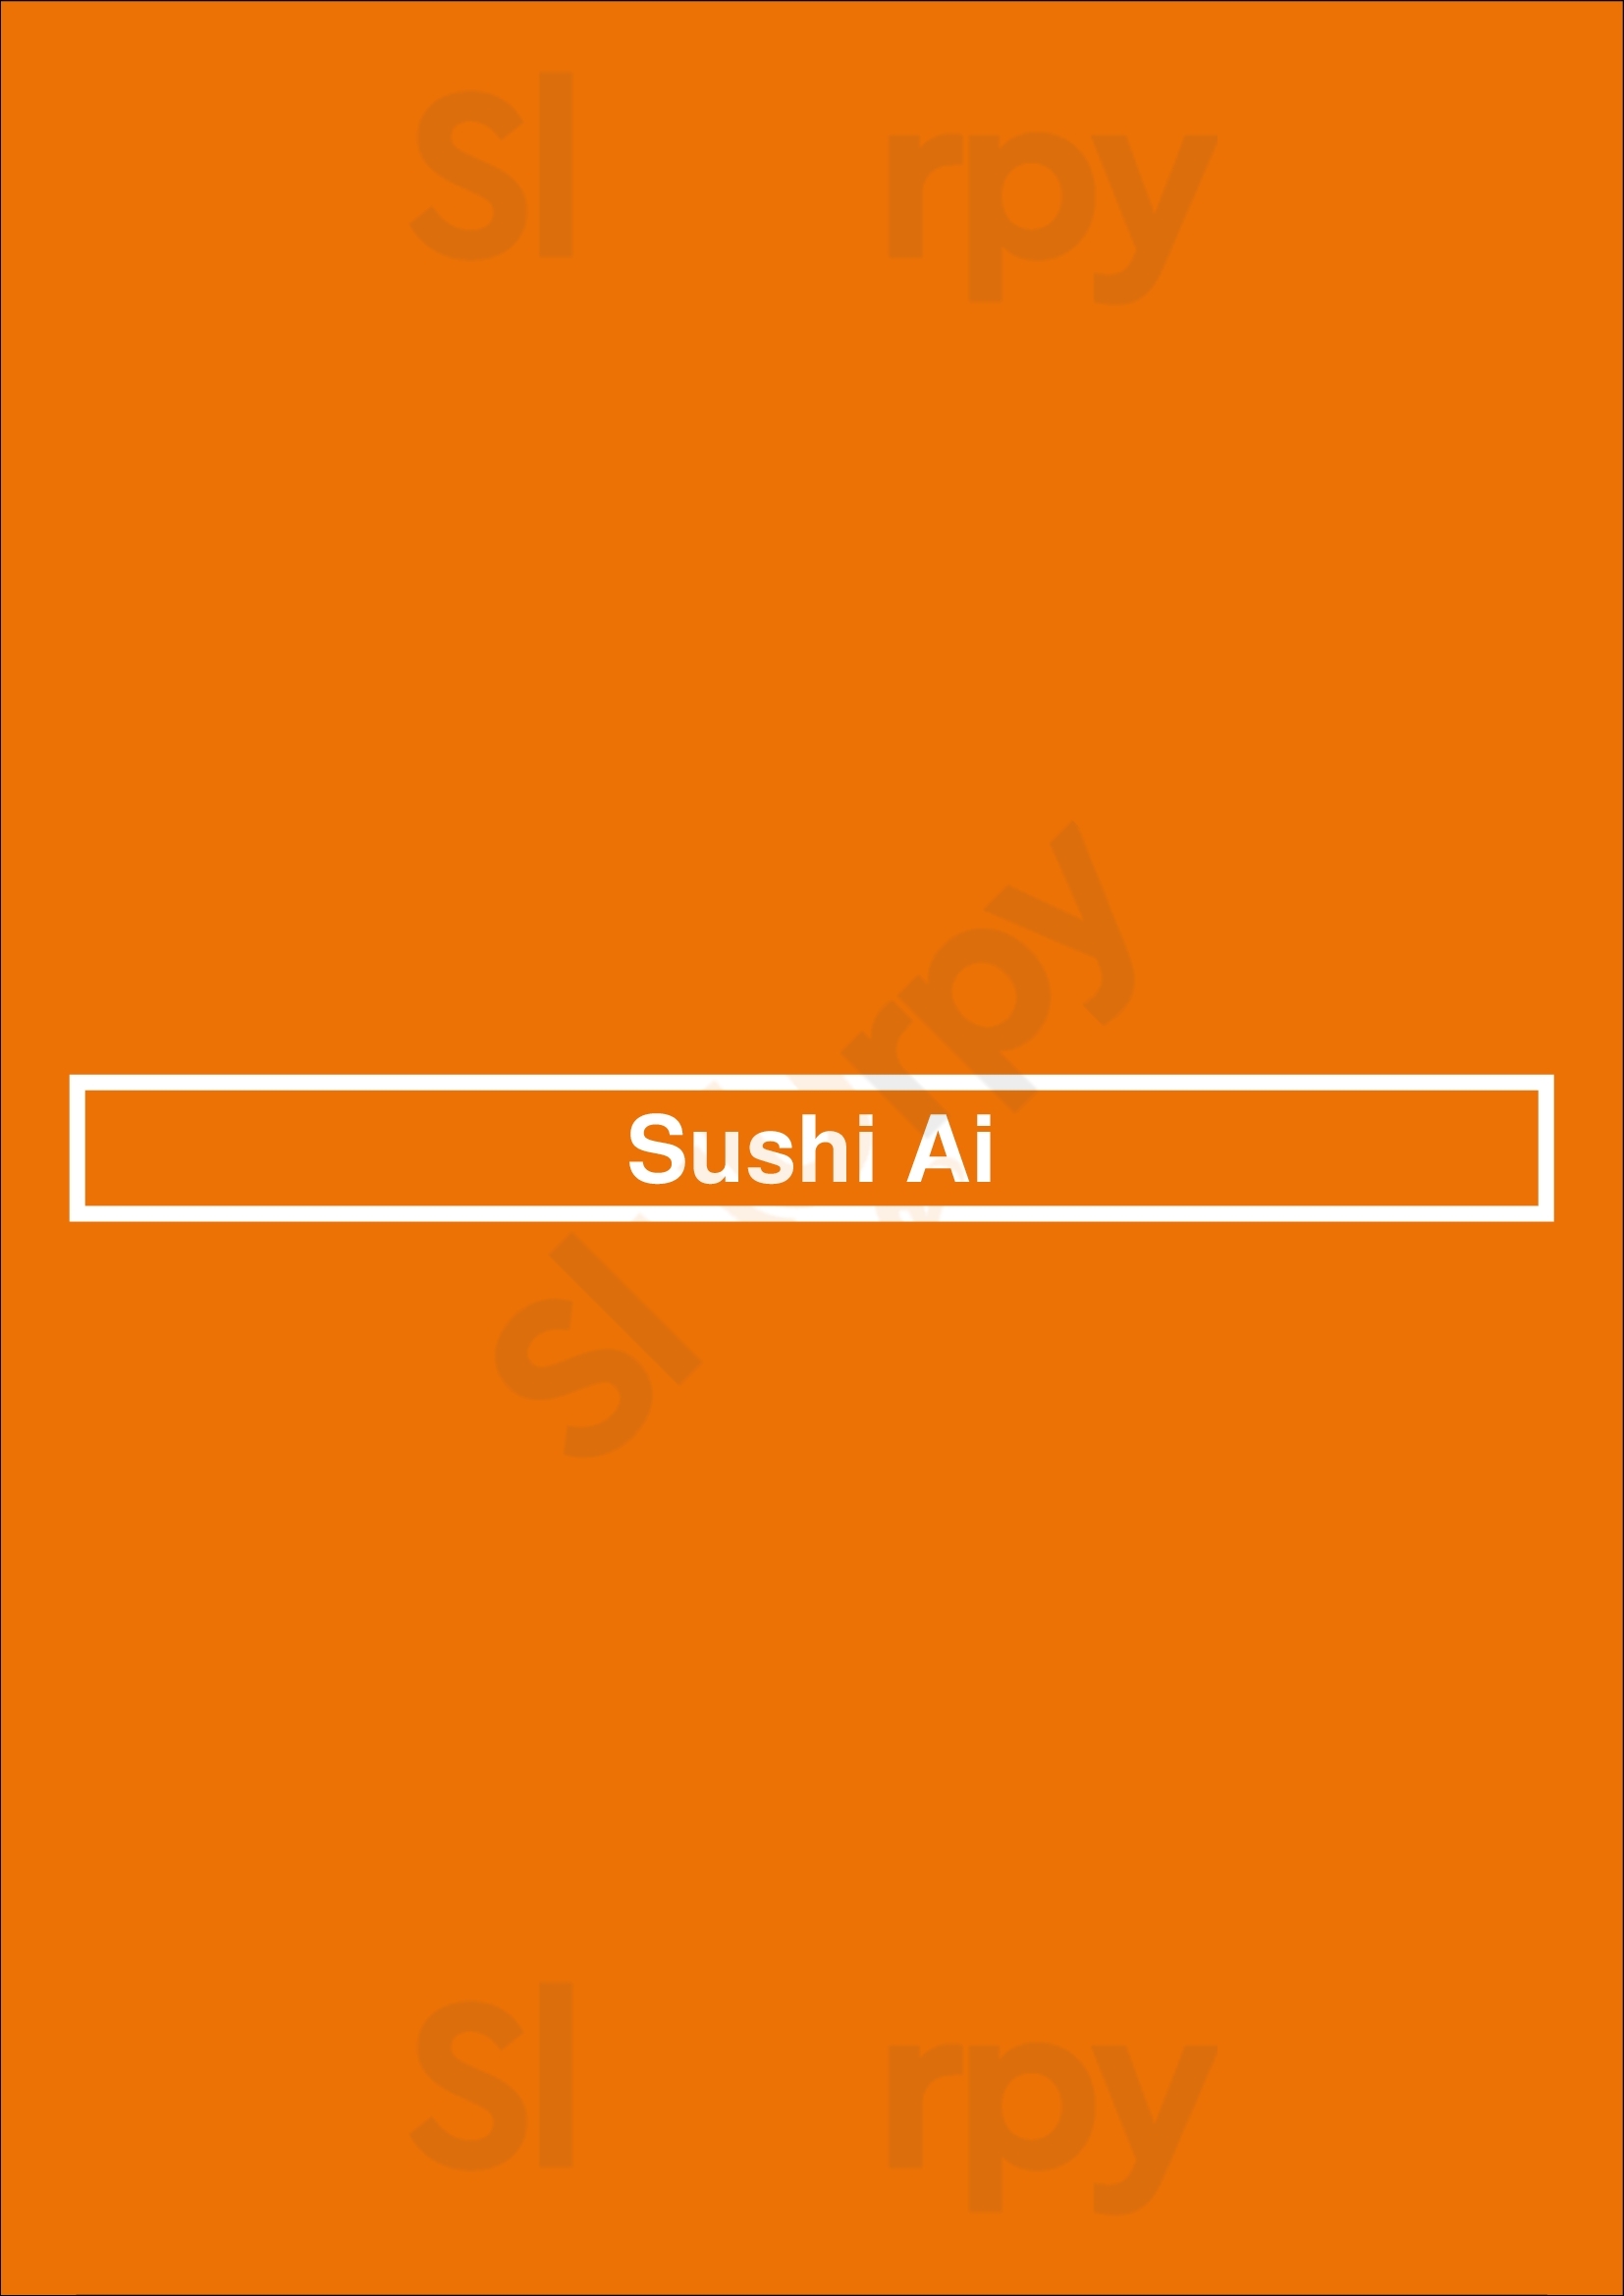 Sushi Ai Long Beach Menu - 1